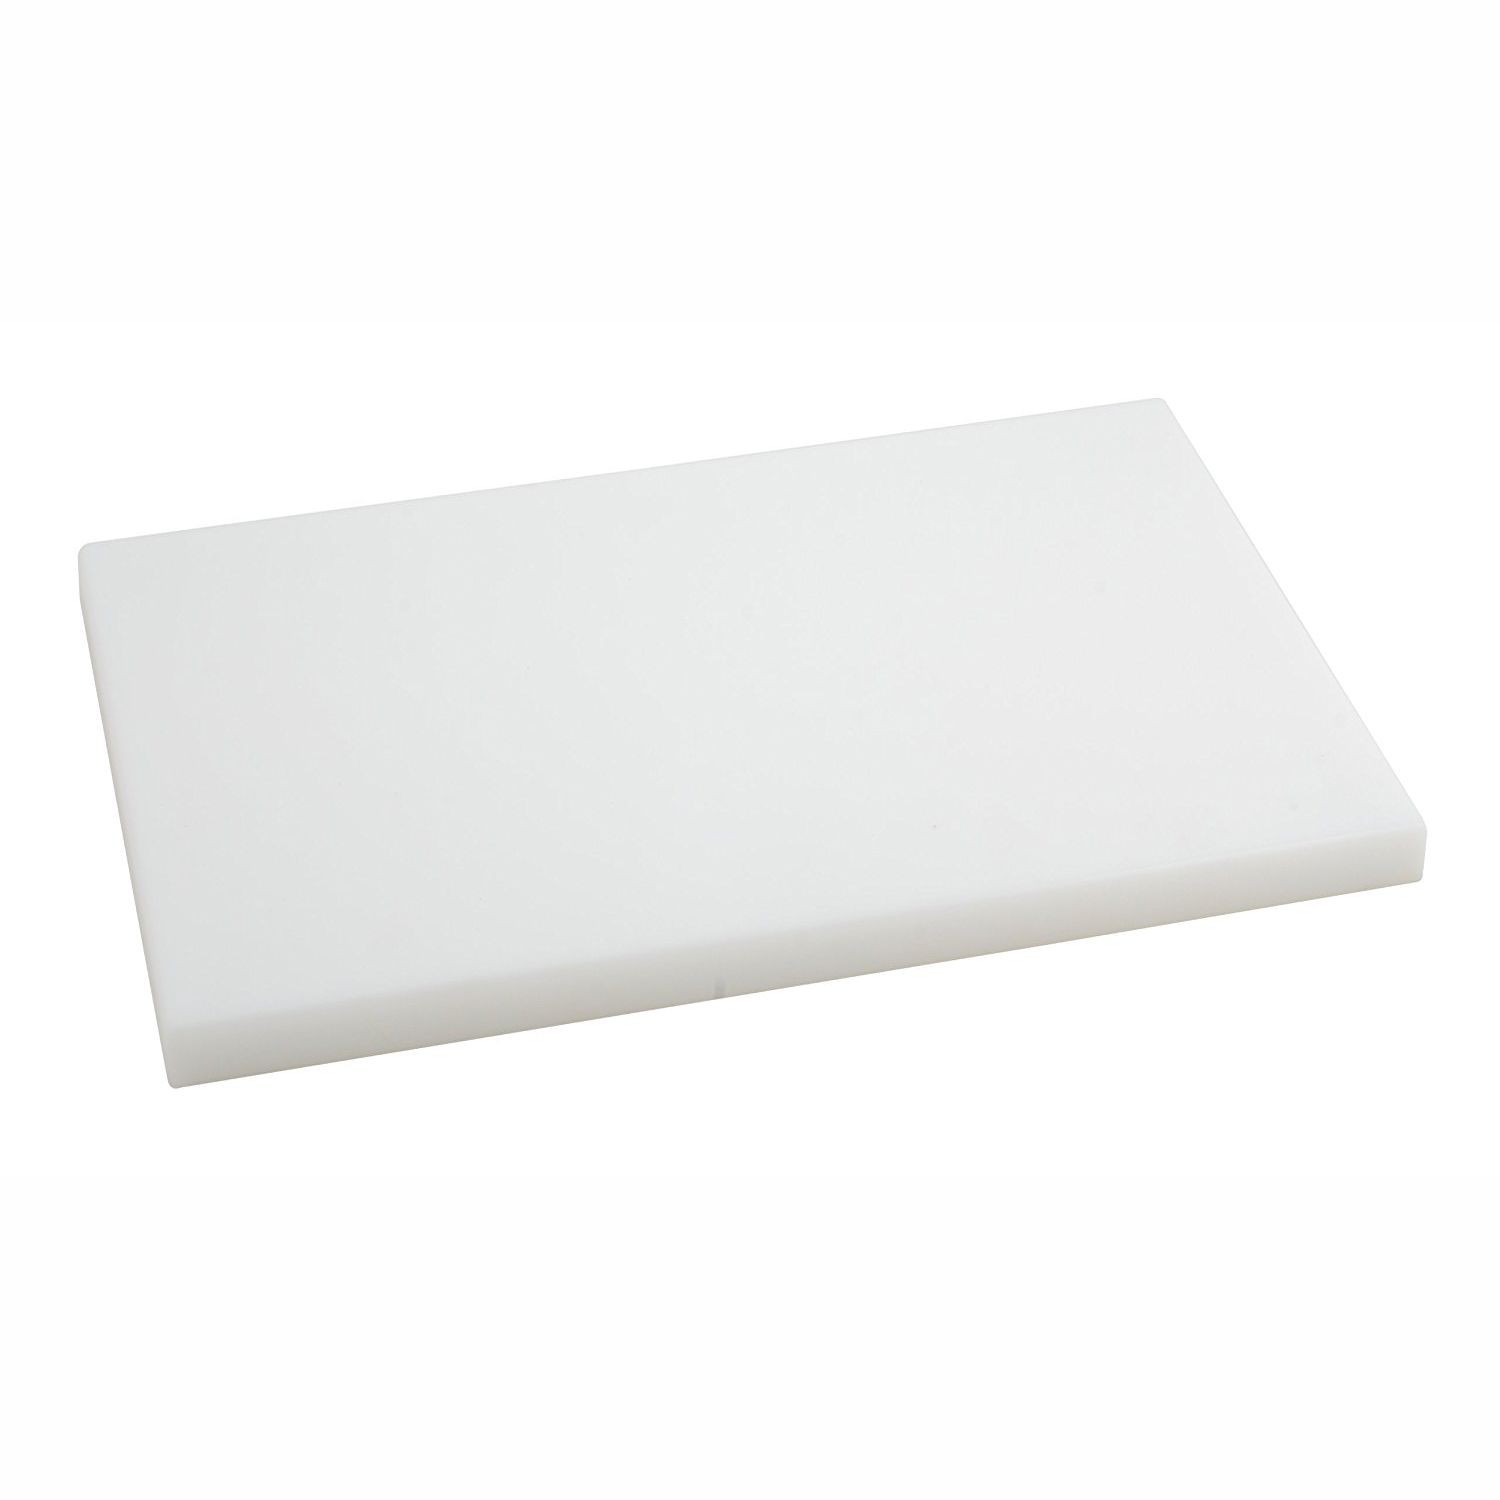 Tabla de corte en polietileno de 60x40 cm espesor 20 mm color blanco -  Metaltex